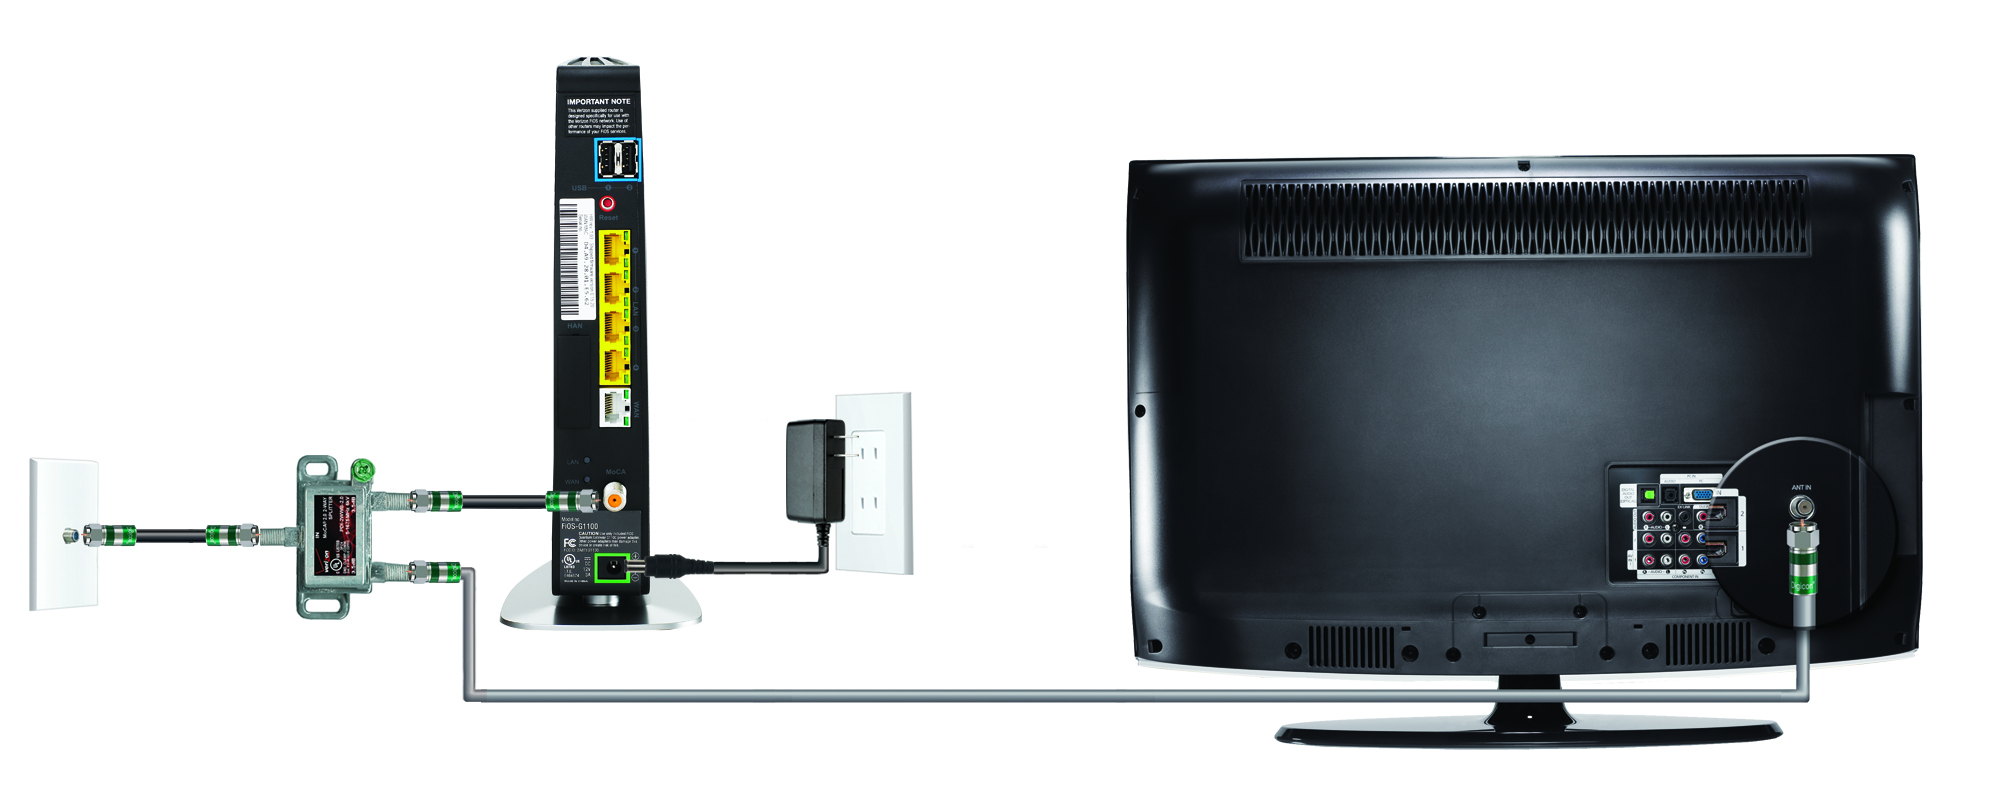 Asegurarse de que el televisor esté configurado en el canal de entrada correcto para el decodificador de FiOS TV
Ajustar el volumen del televisor y del decodificador de FiOS TV